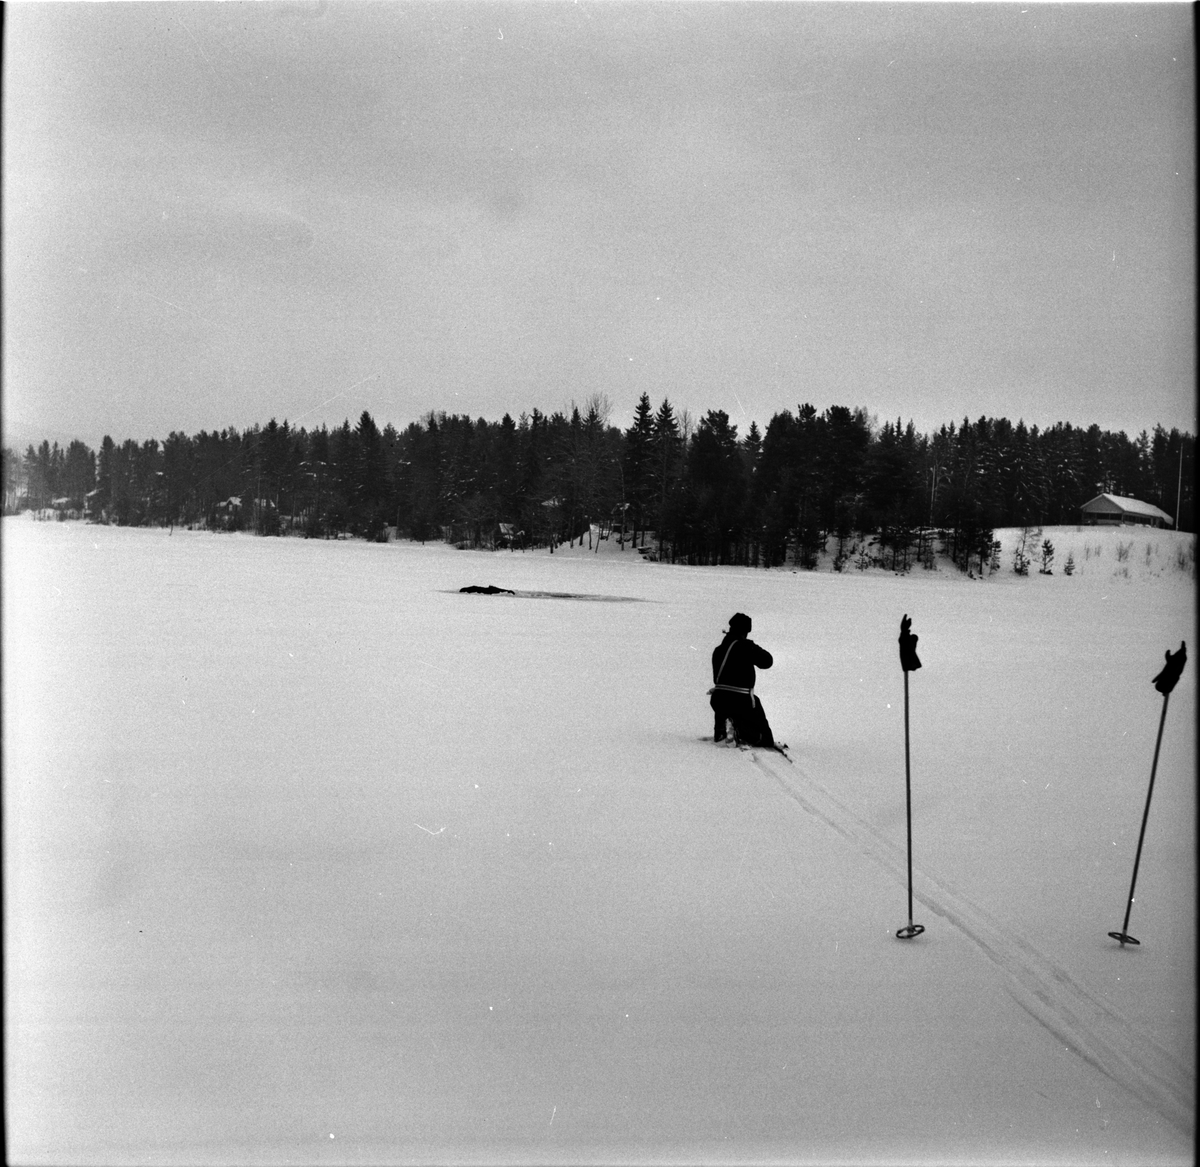 Arbrå,
Älgdrama på Kyrksjön,
22 Januari 1969